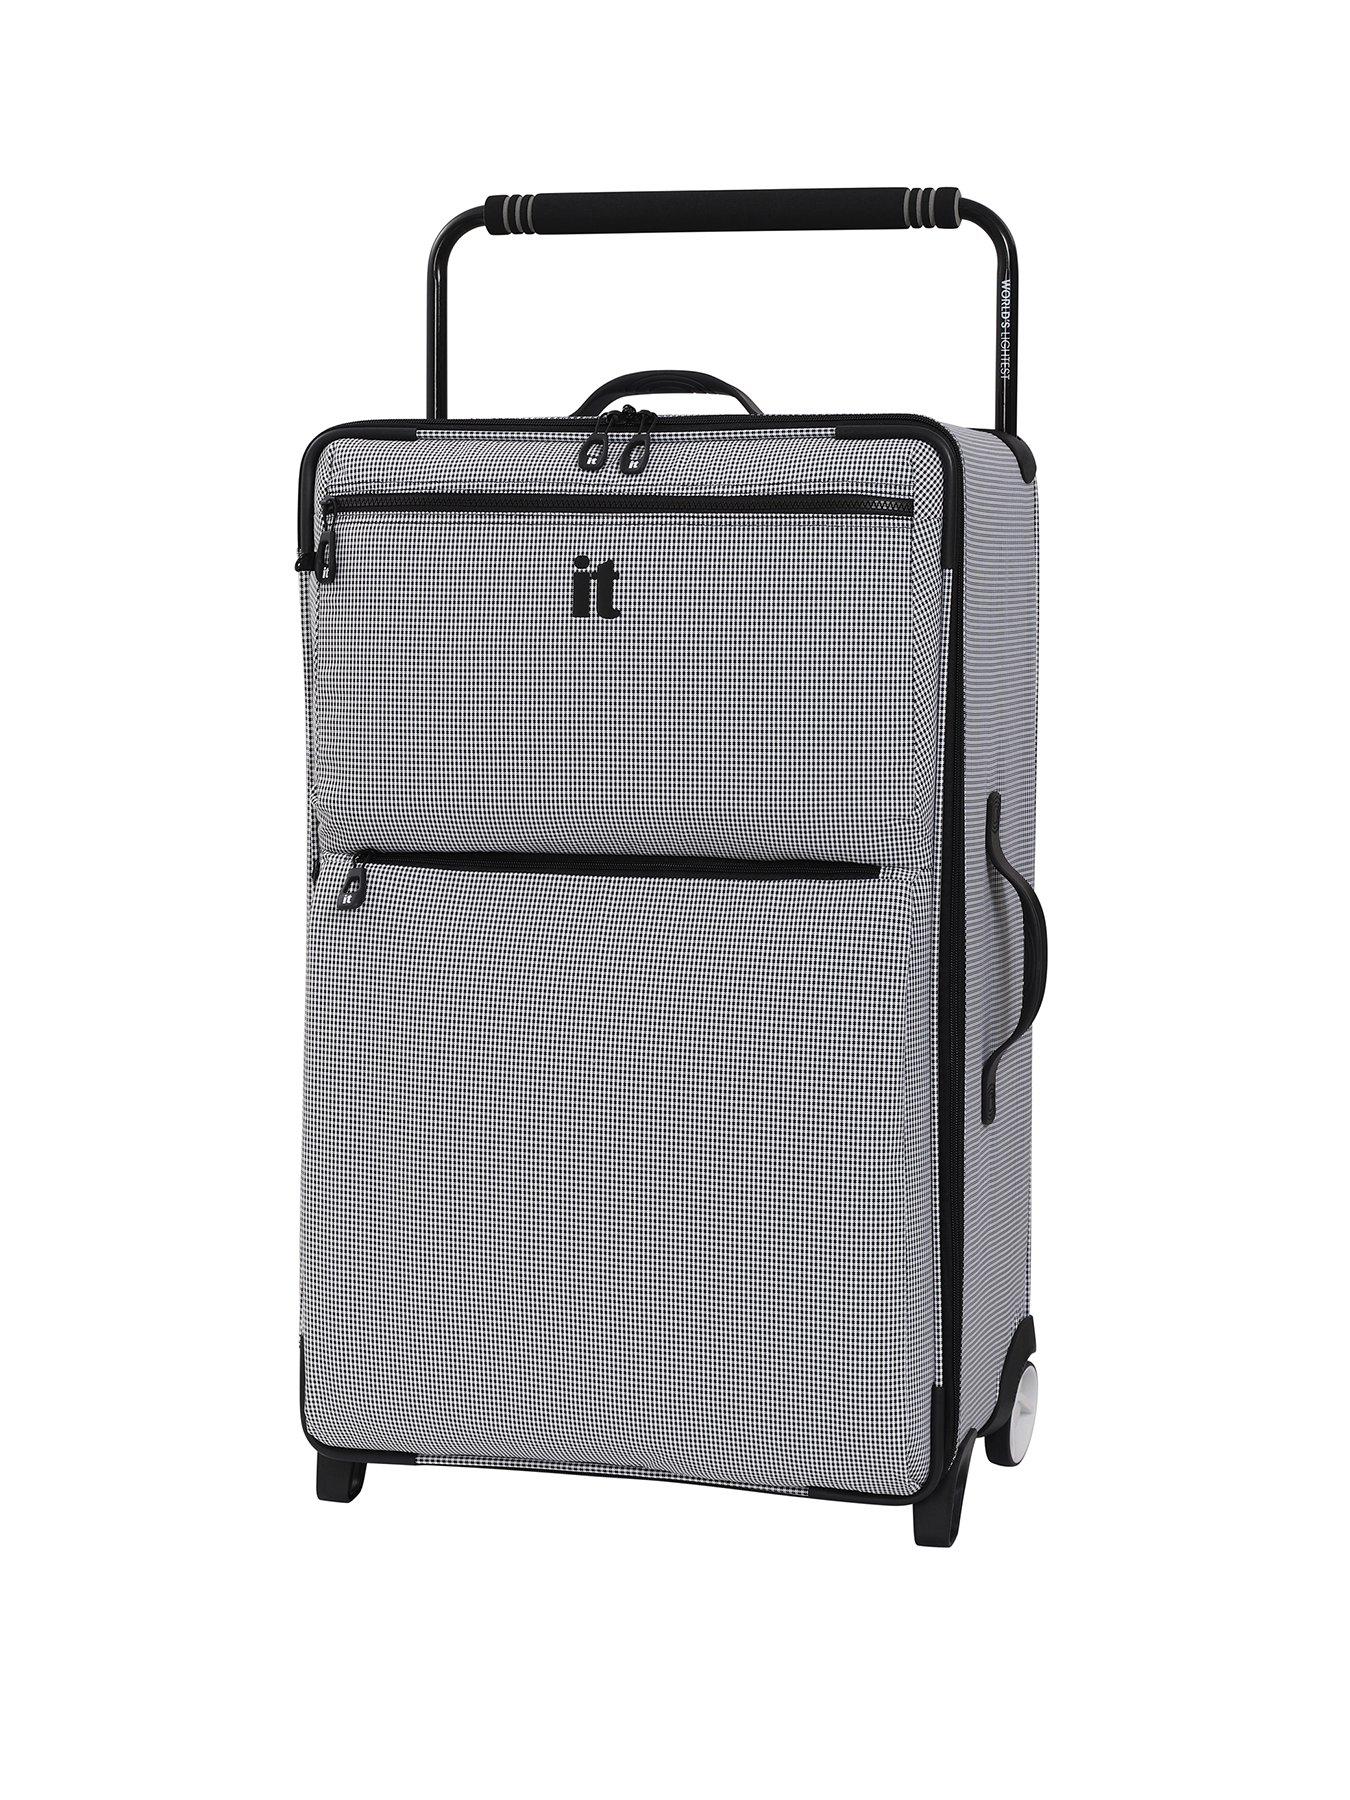 lightest medium suitcase